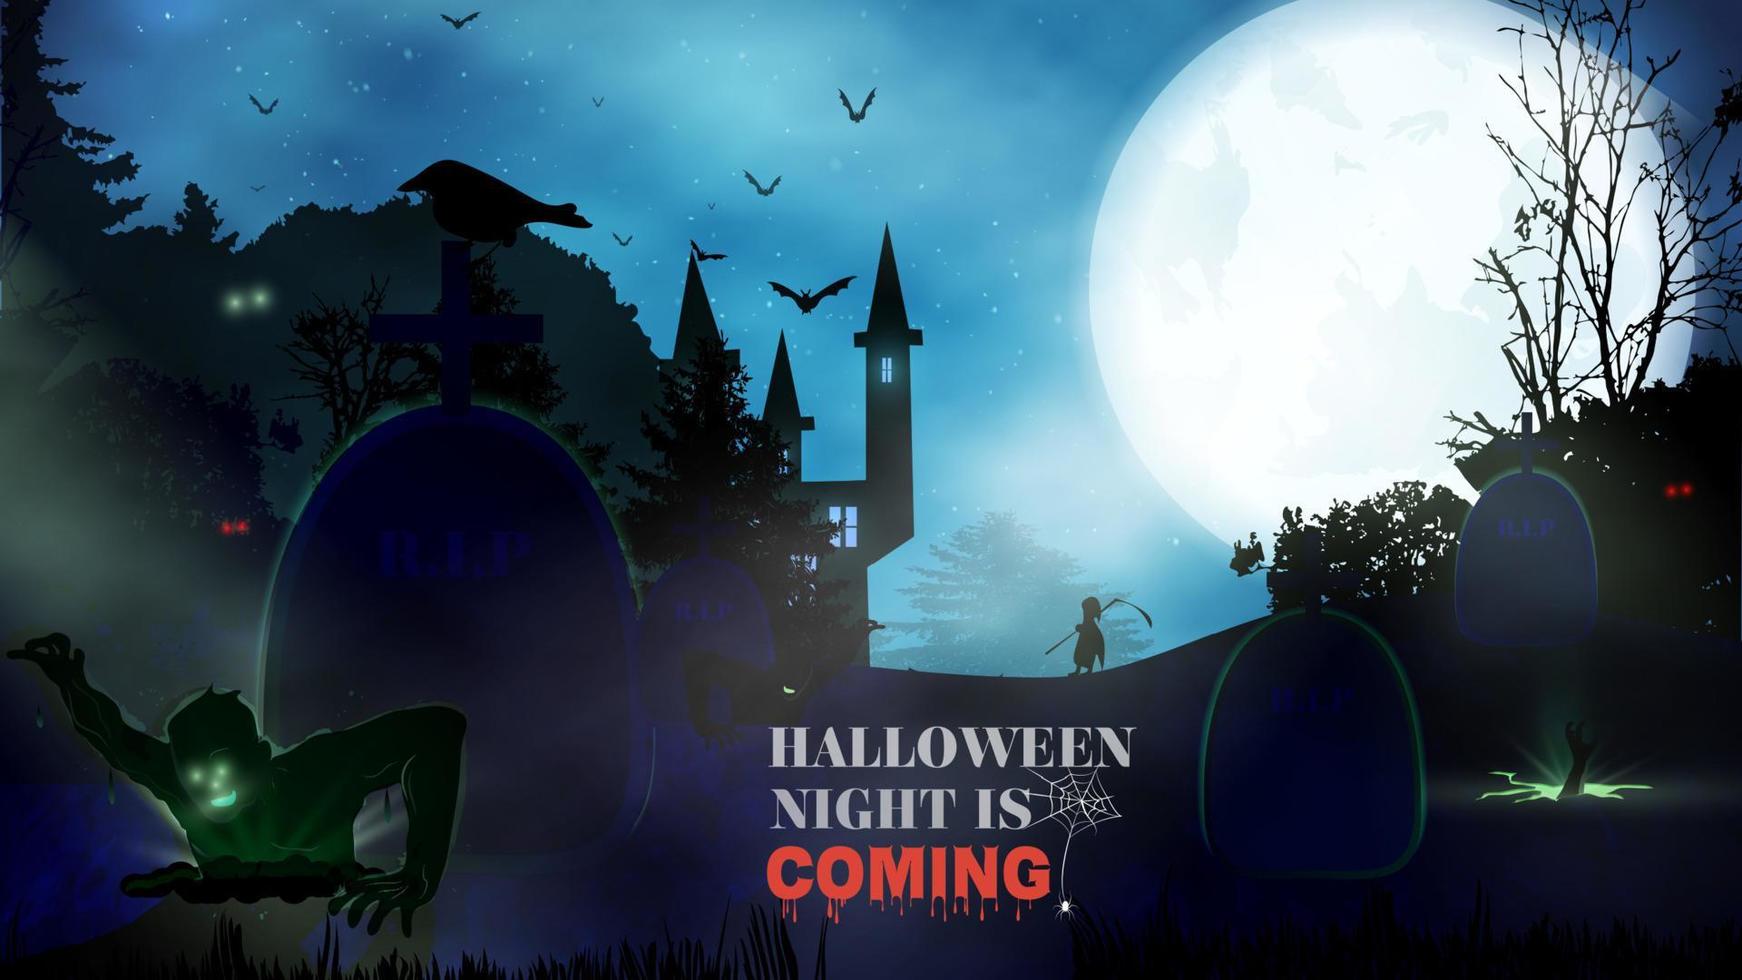 halloween natt bakgrund med pumpa, spökhus och fullmåne. reklamblad eller inbjudningsmall för halloween-fest. vektor illustration.